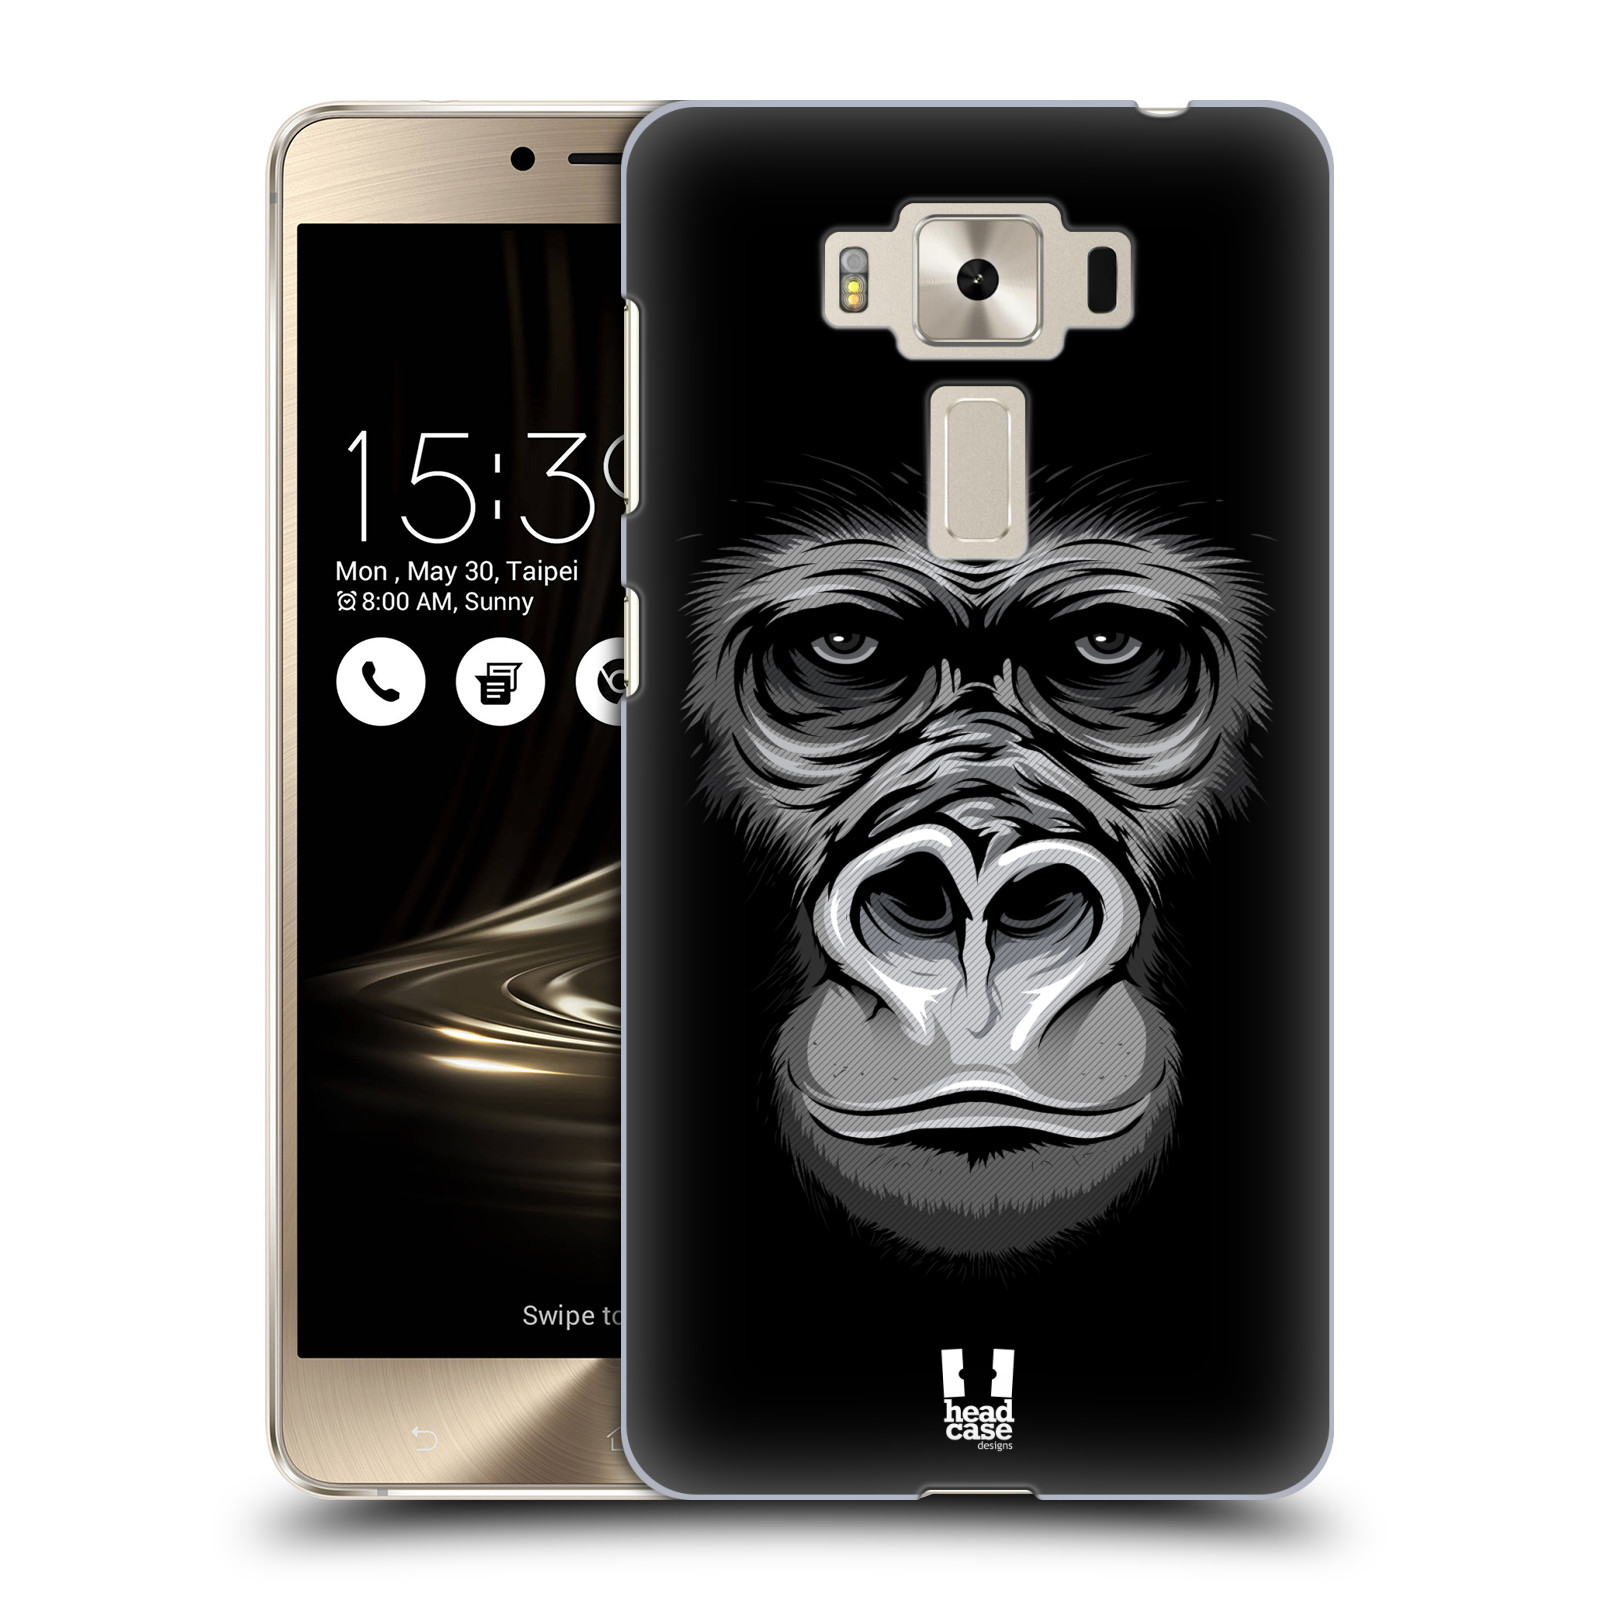 HEAD CASE plastový obal na mobil Asus Zenfone 3 DELUXE ZS550KL vzor Zvíře kreslená tvář 2 gorila